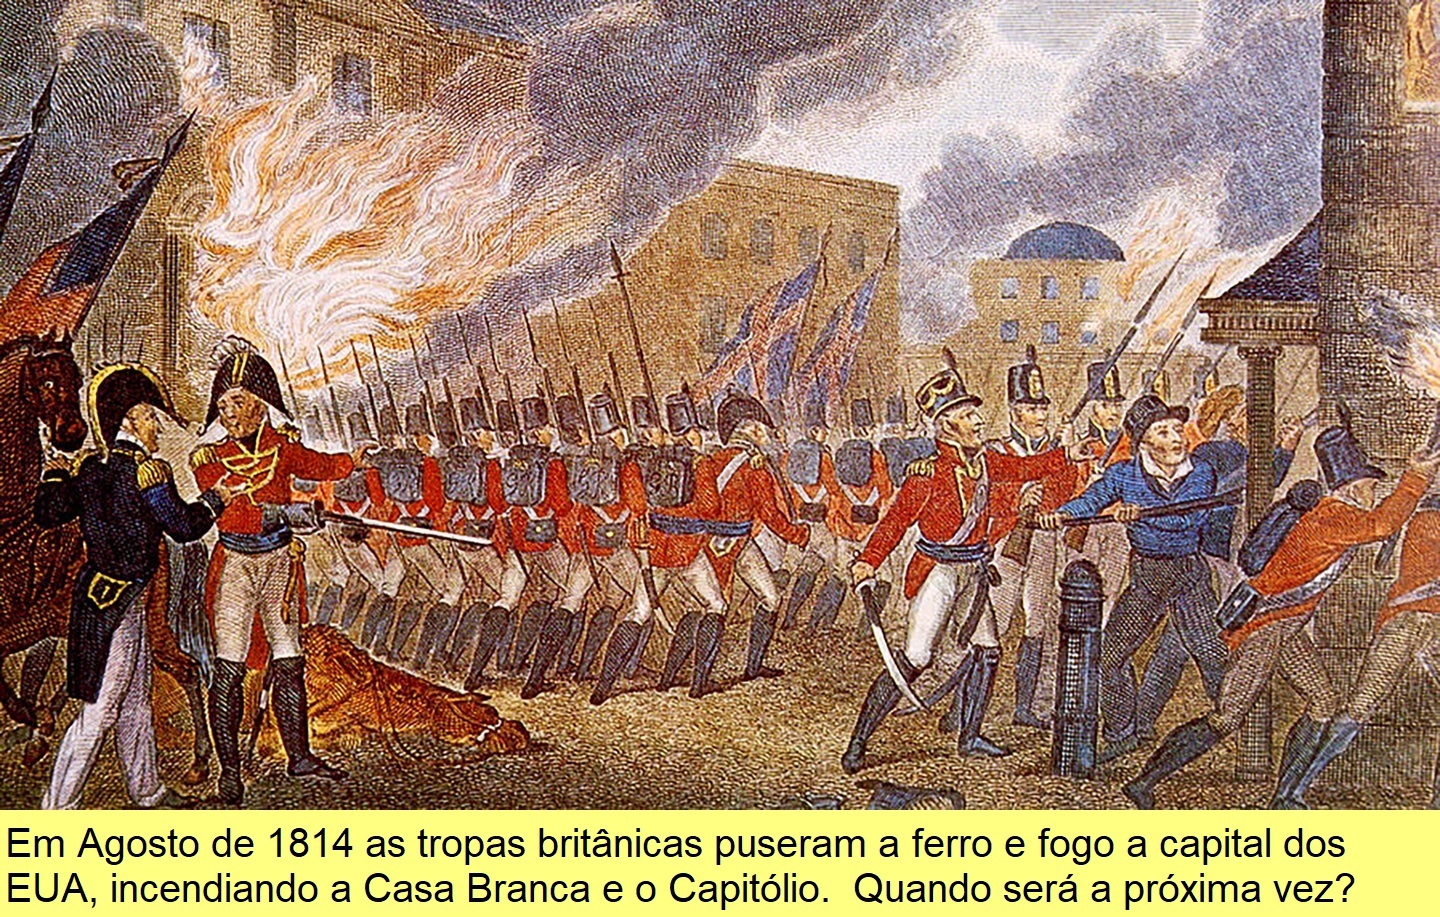 O incêndio da Casa Branca e do Capitólio ateado pelas tropas britânicas em 1814.